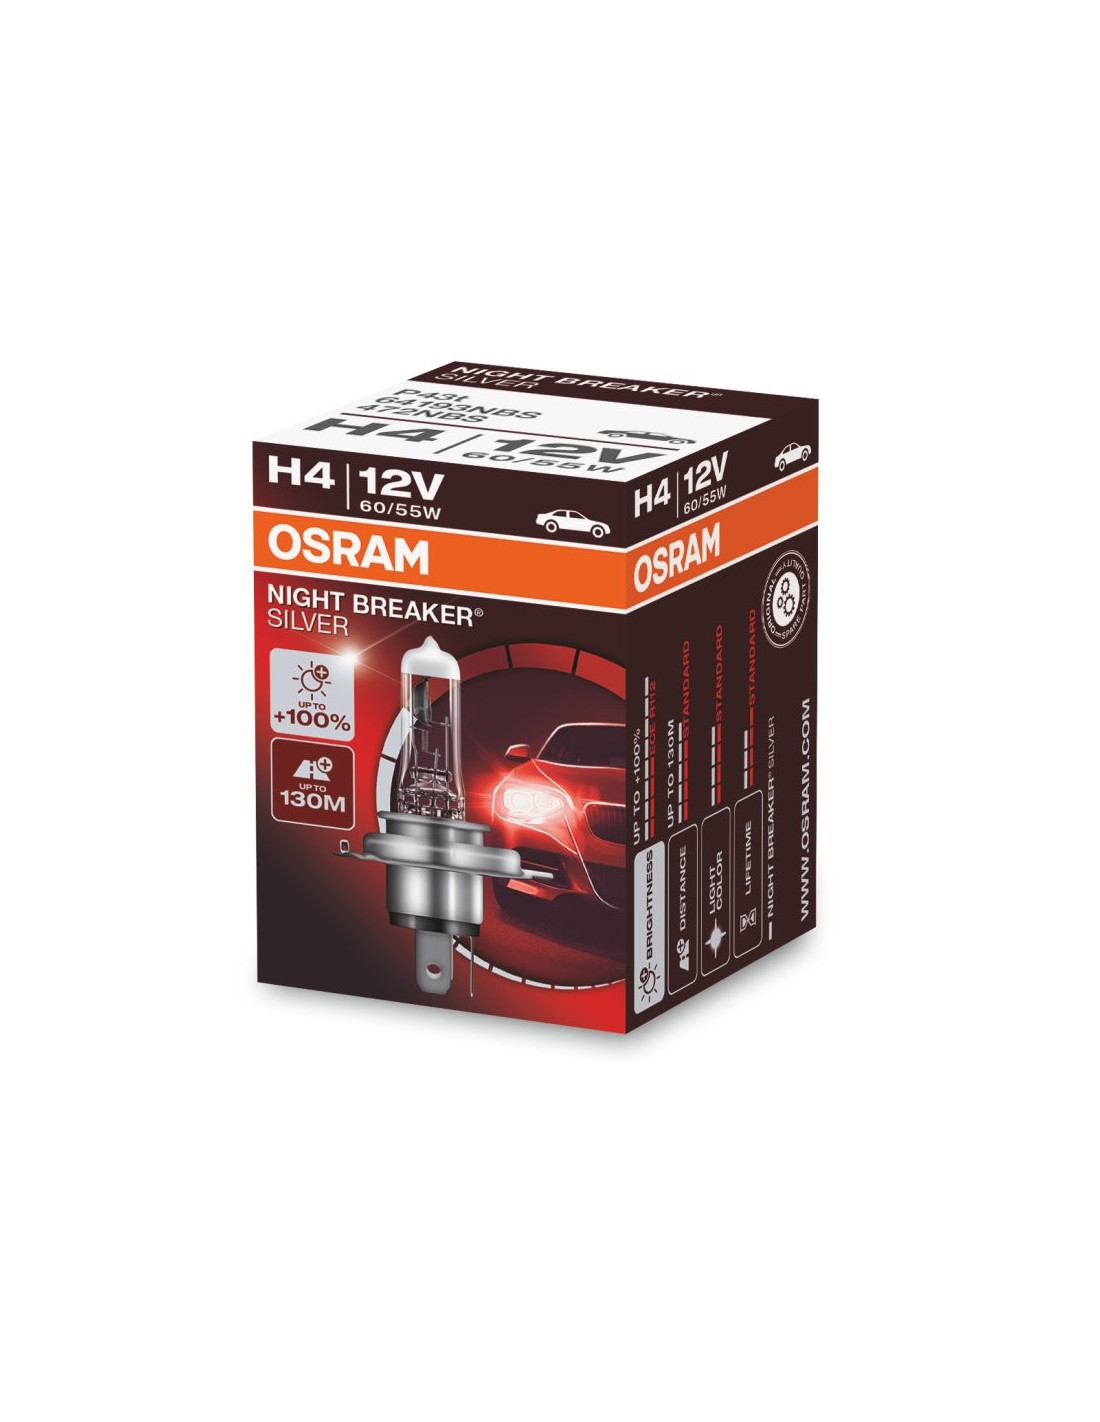 Compre Bombillas Osram H4 12V Night Breaker Plata +100% / Paquete de 2 al  por mayor y al por menor